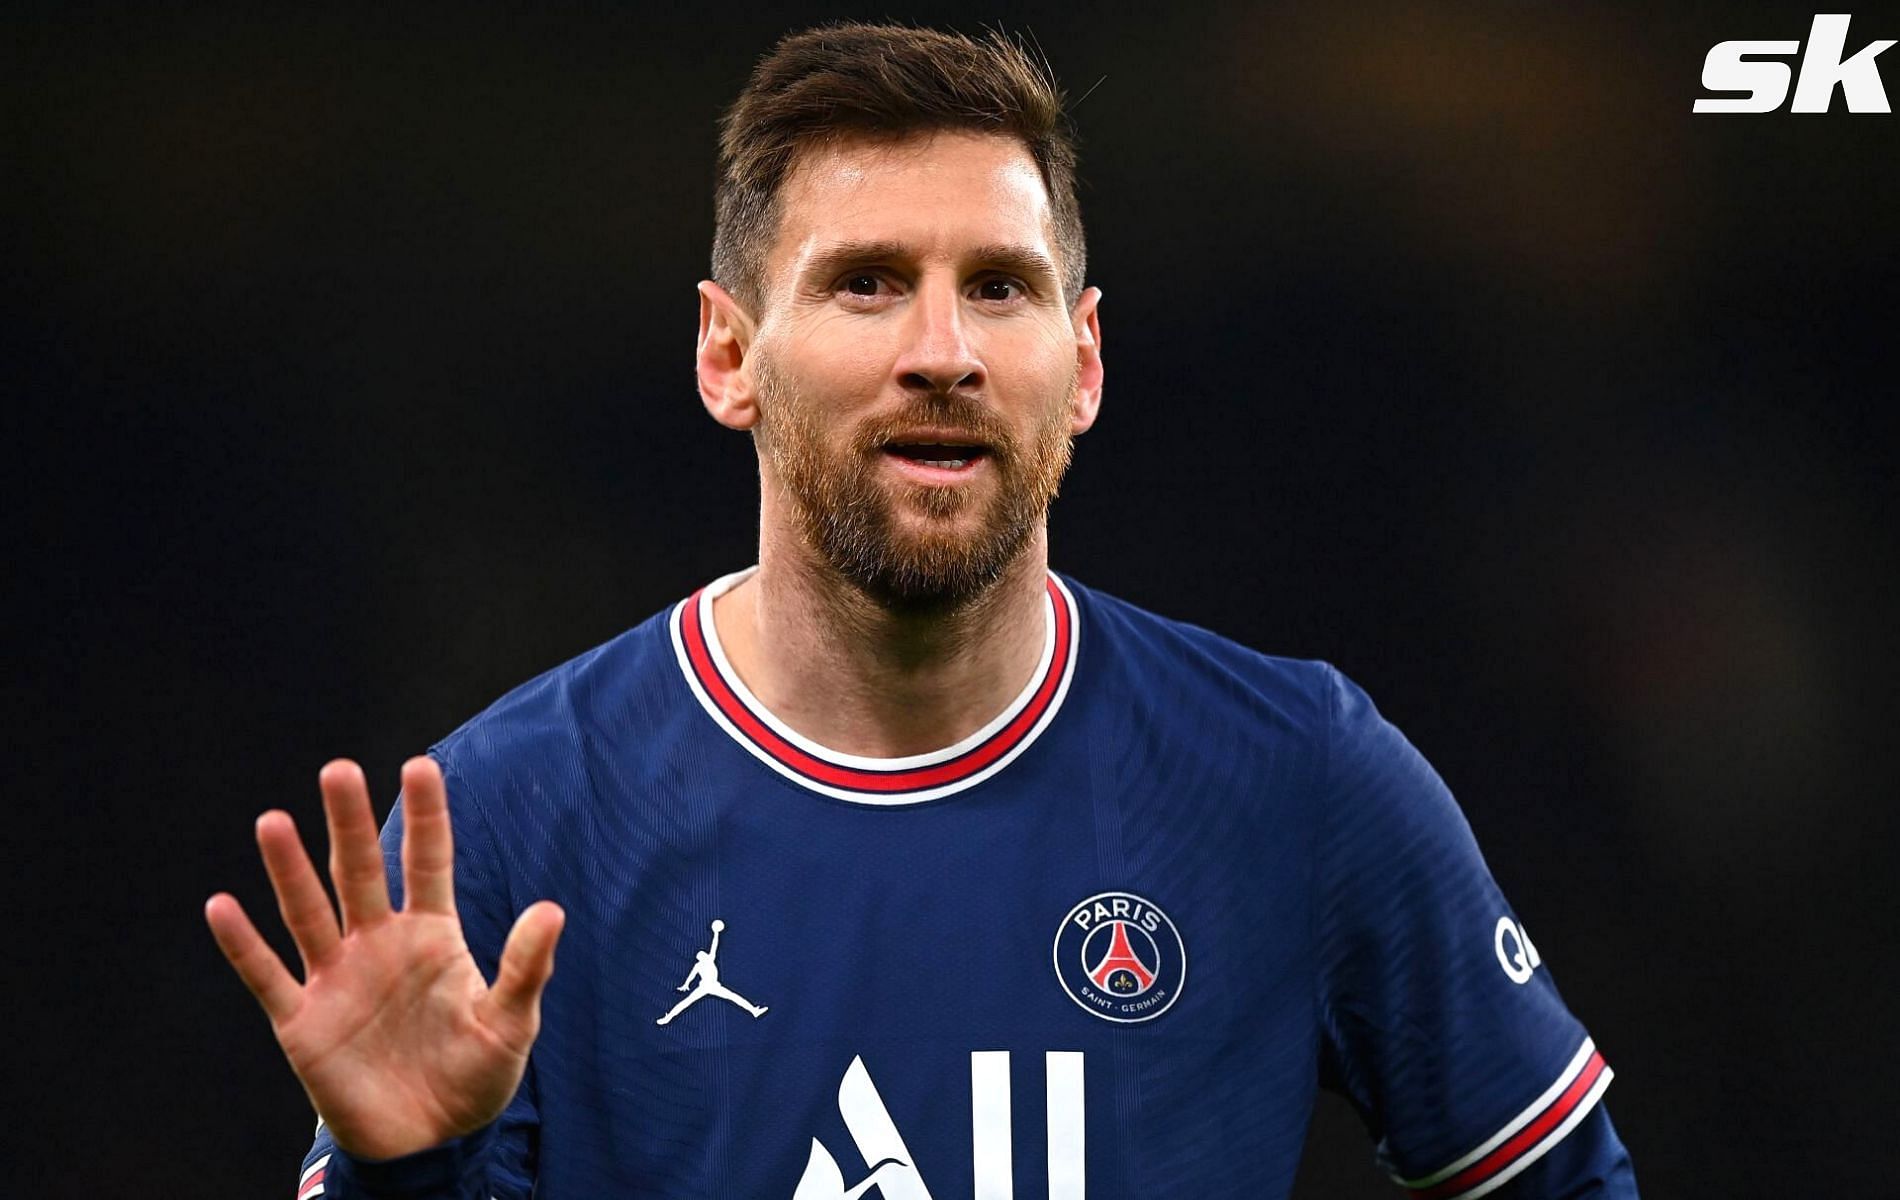 Lionel Messi put on a show against Saint-Etienne